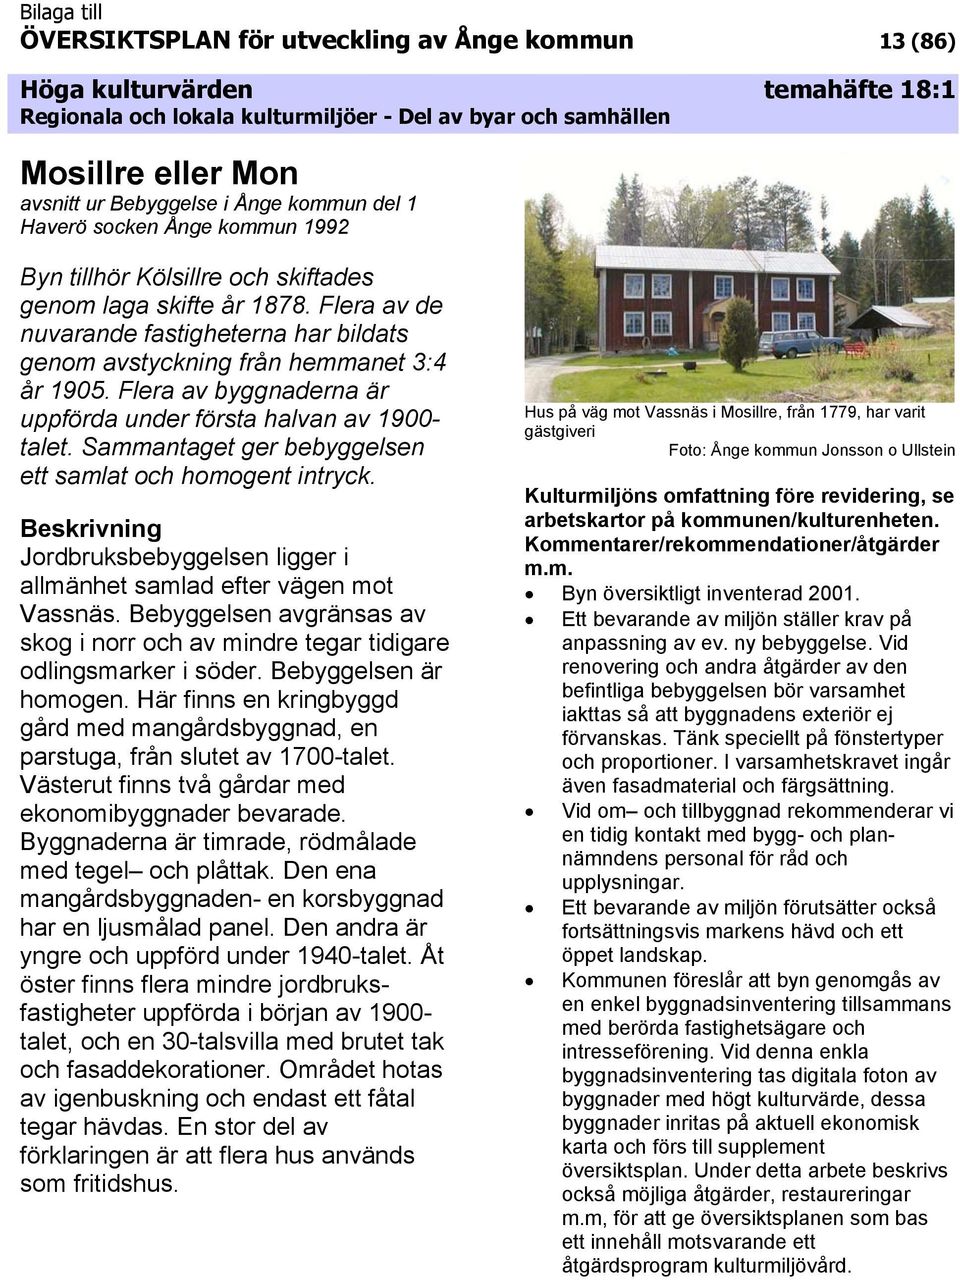 Sammantaget ger bebyggelsen ett samlat och homogent intryck. Jordbruksbebyggelsen ligger i allmänhet samlad efter vägen mot Vassnäs.